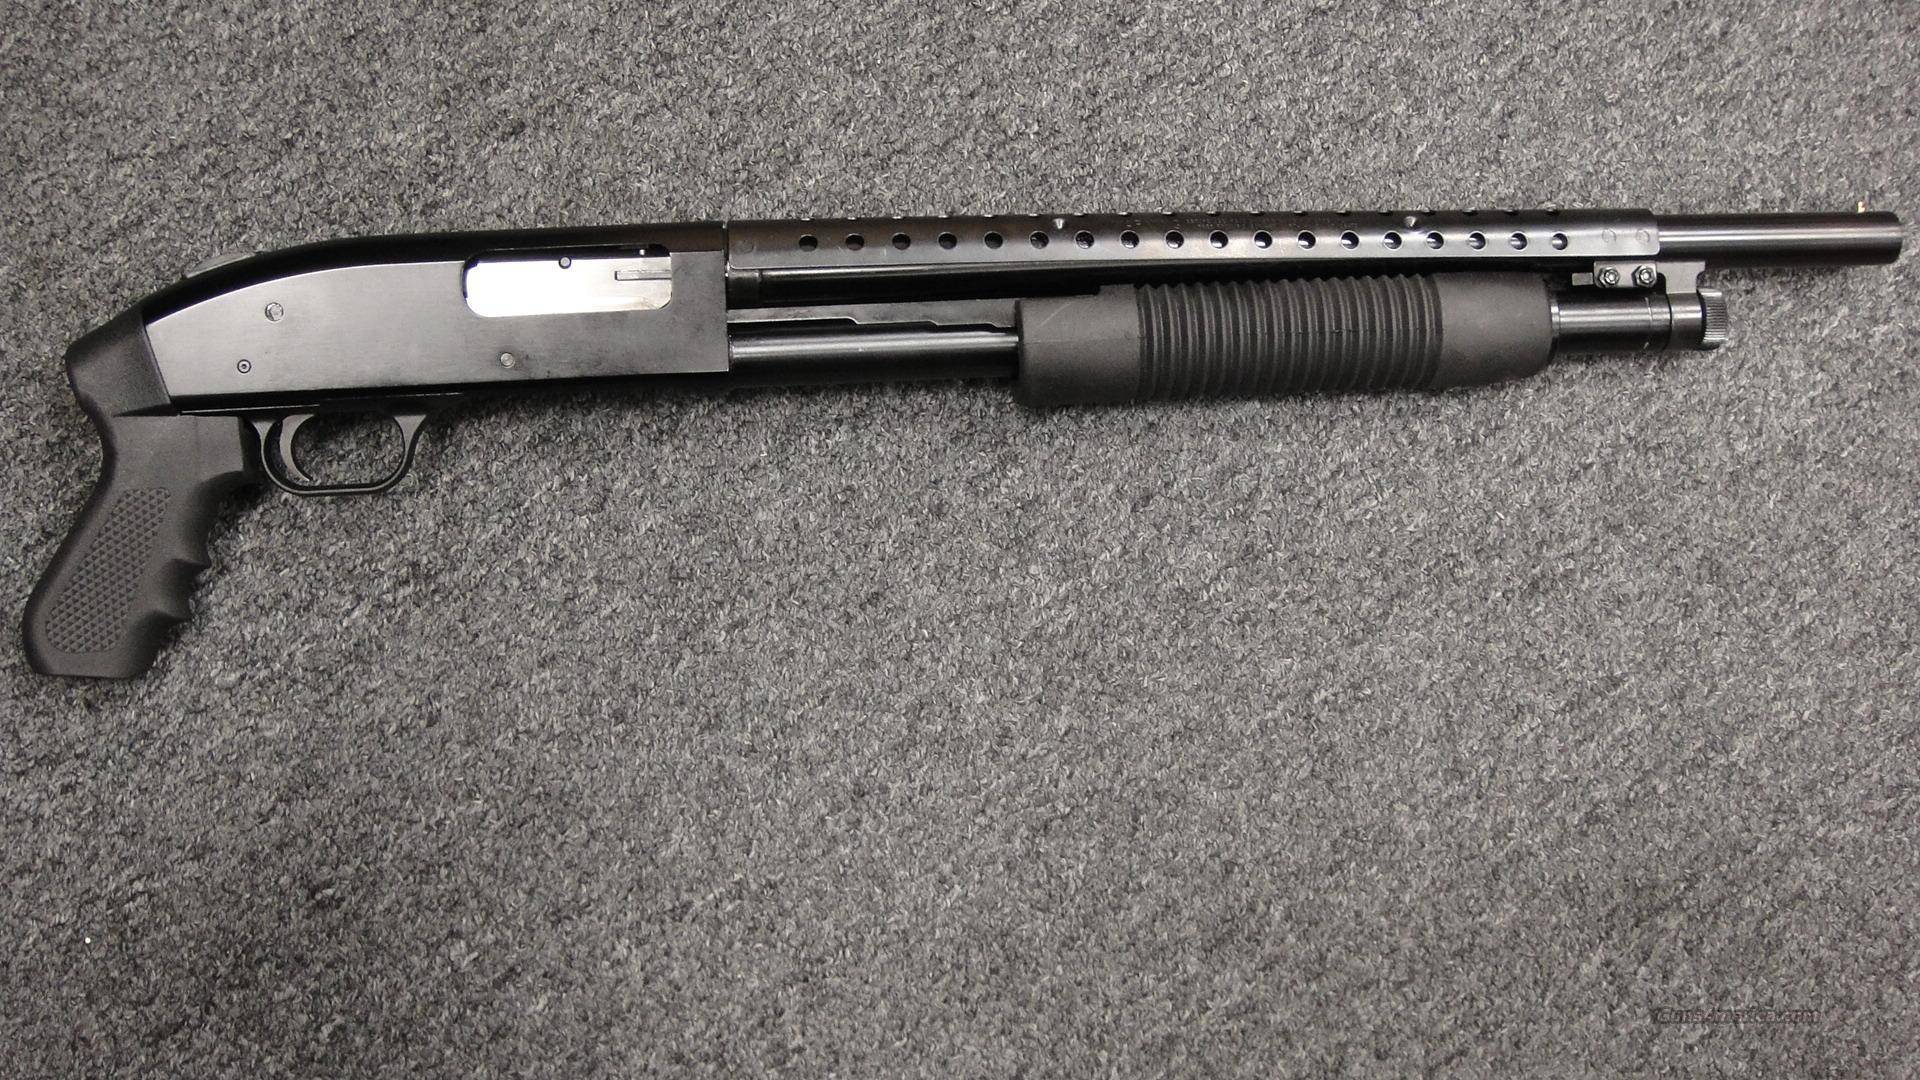 Помповое ружьё mossberg 500 против remington 870